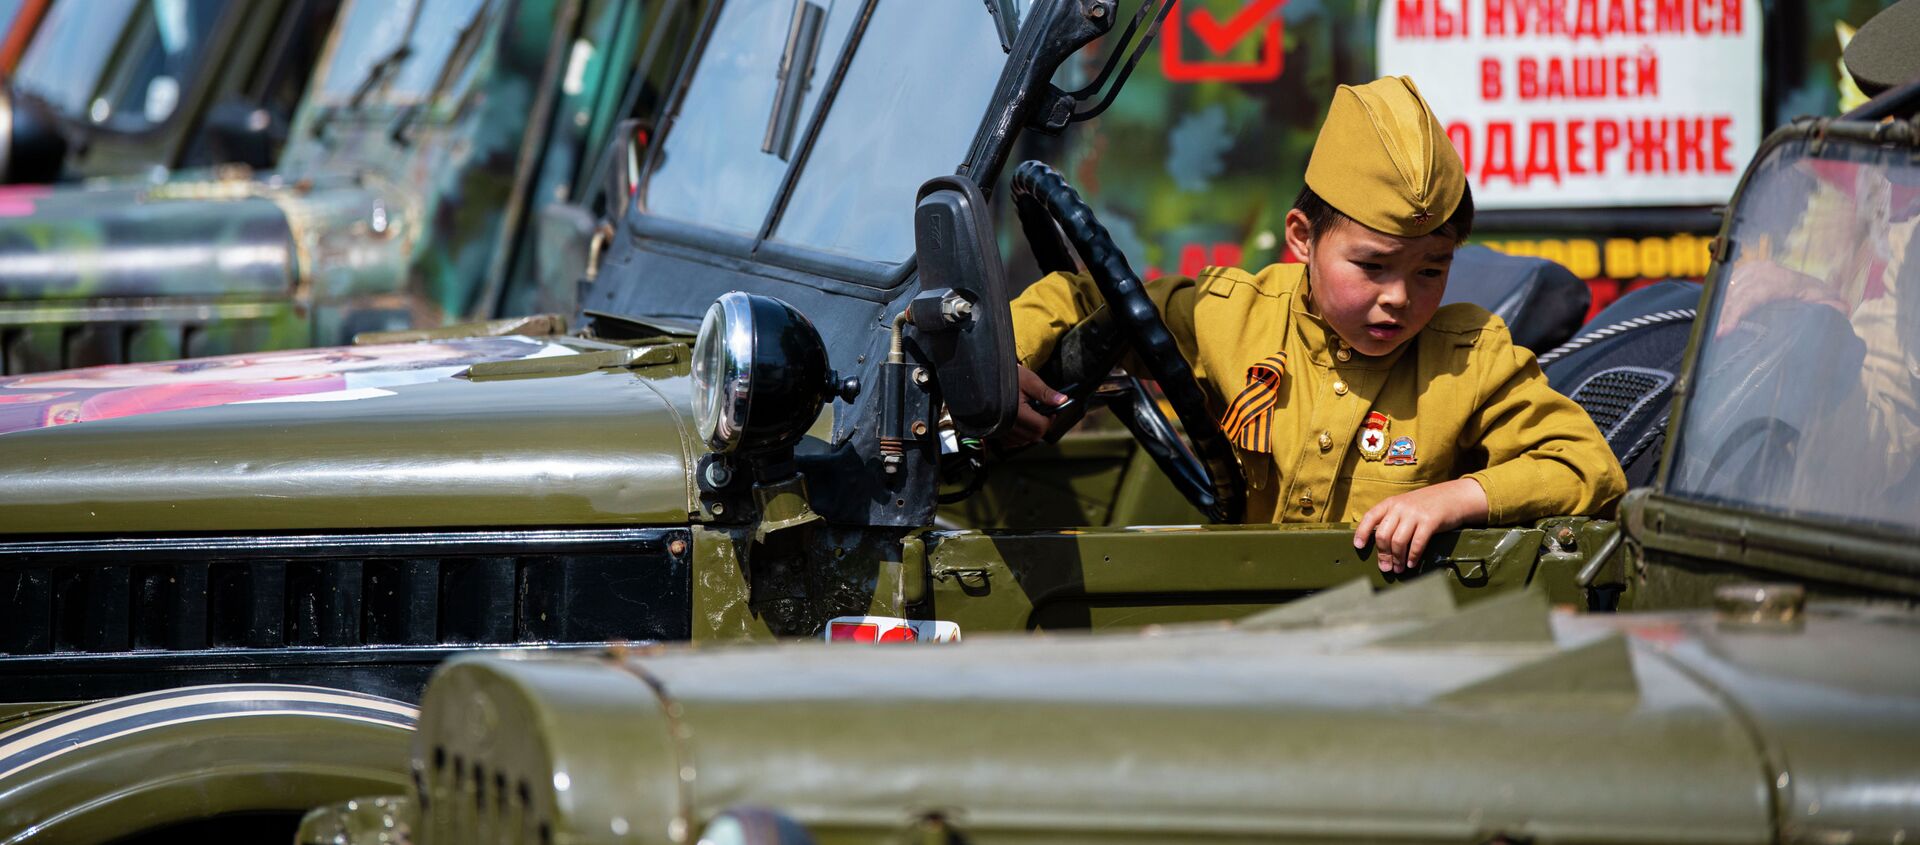 Автопробег в честь 76-й годовщины Победы в ВОВ в Бишкеке - Sputnik Кыргызстан, 1920, 09.05.2021